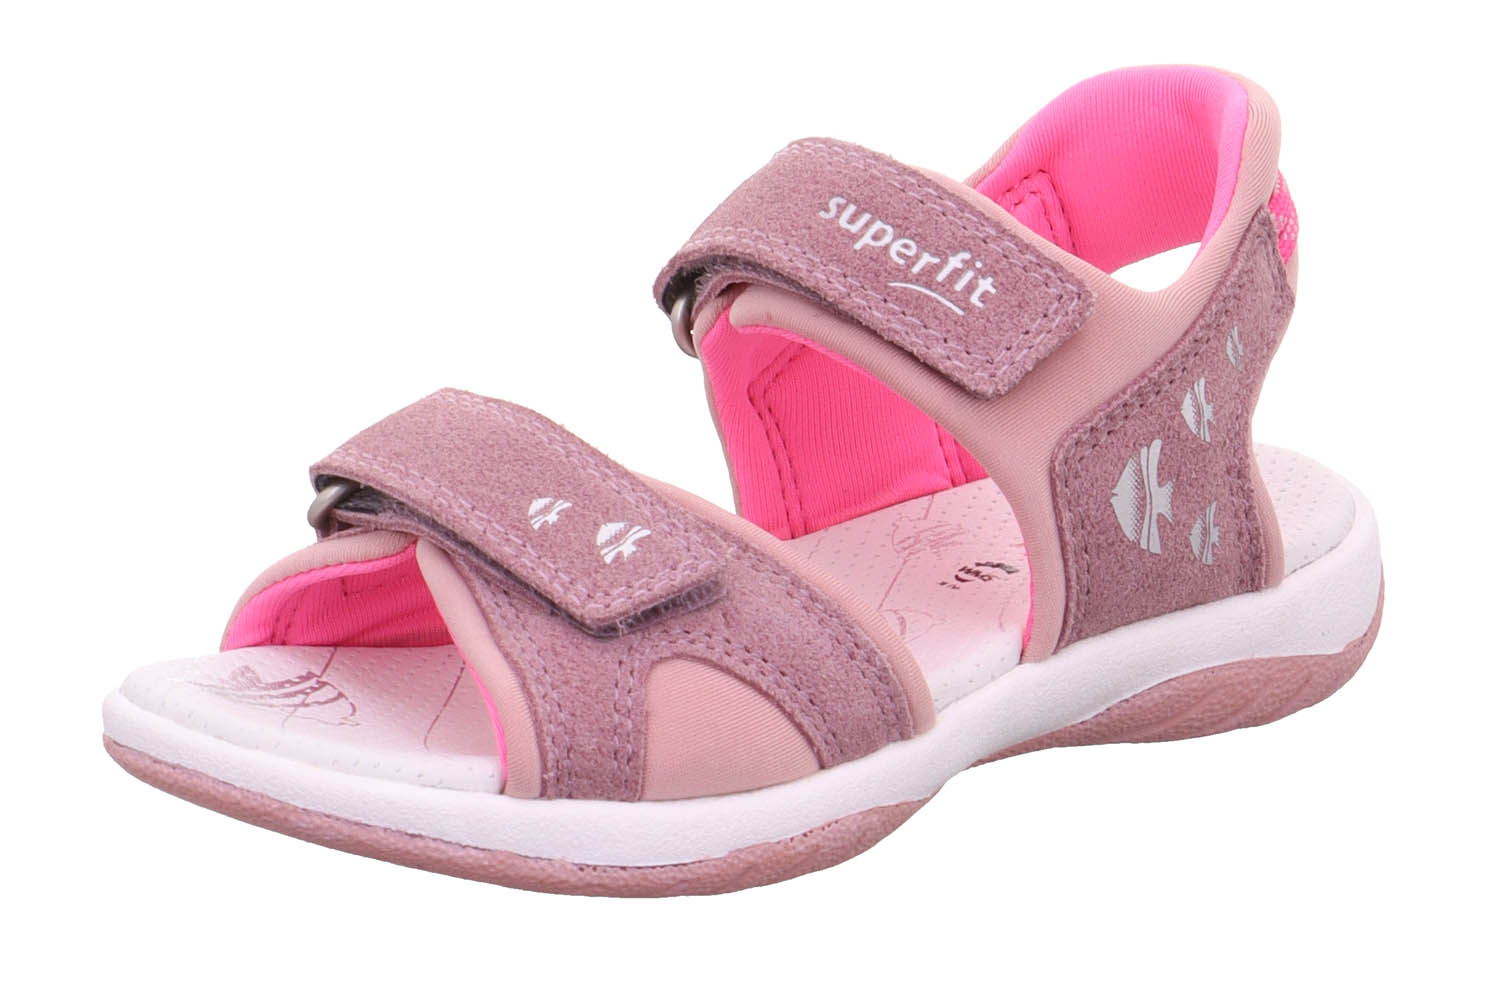 Босоножки Superfit для девочек, размер RU 31, фиолетовый и розовый, 1-006127-8500